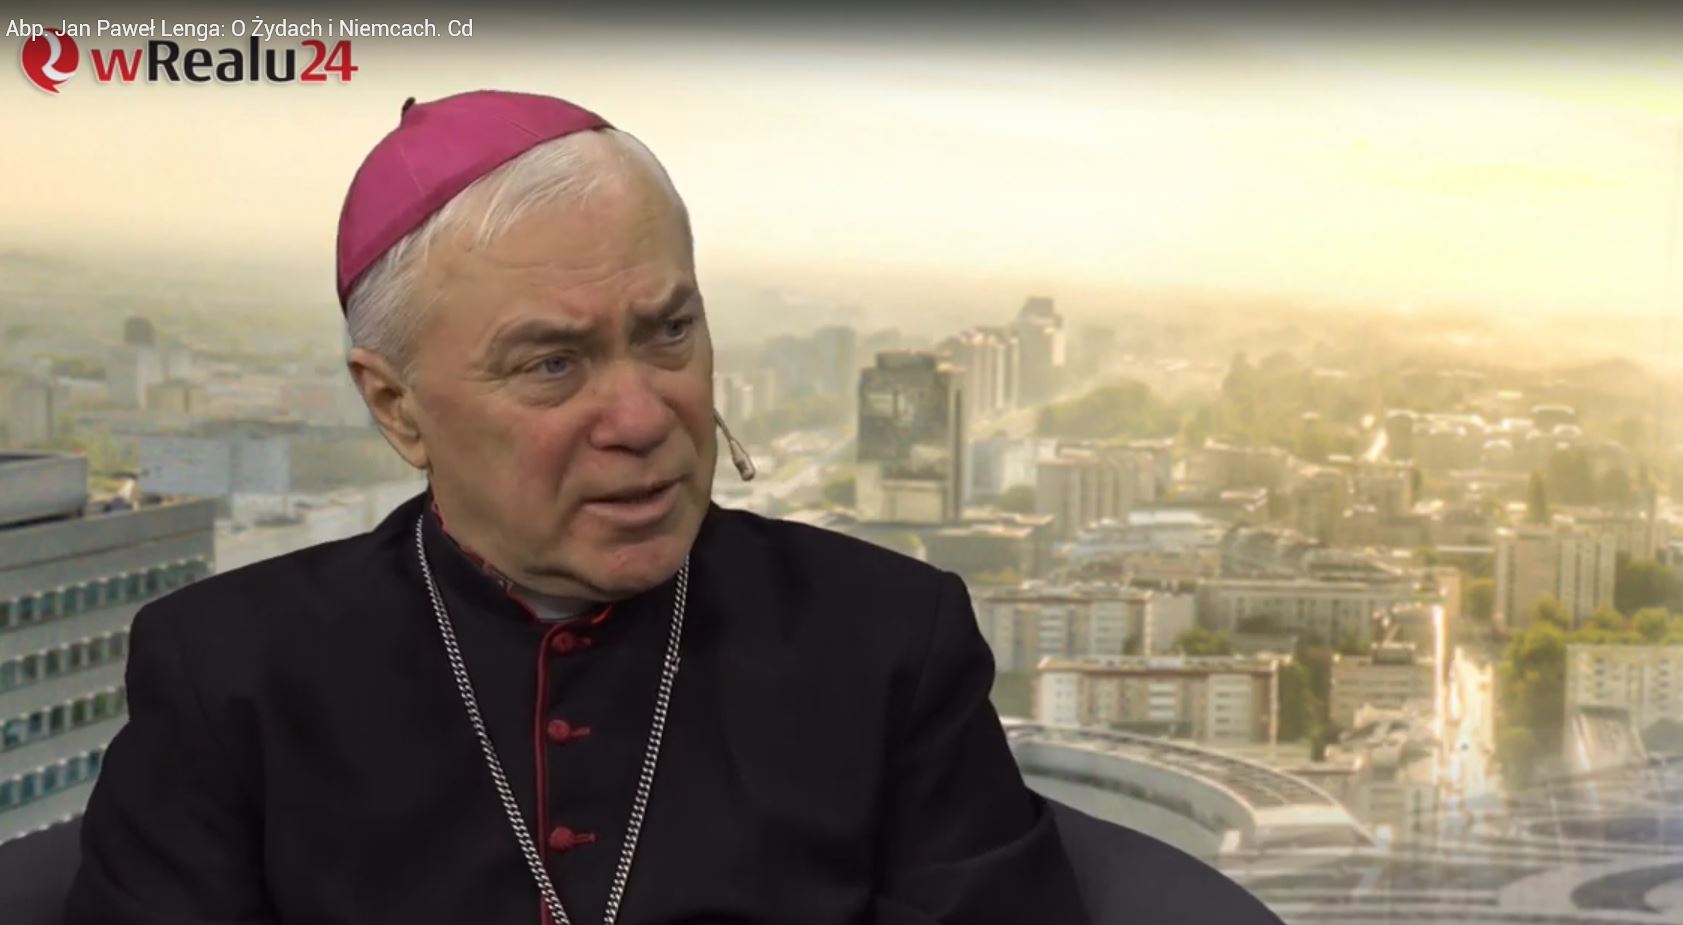 L'archevêque polonais Mgr Jan Pawel Lenga a été interdit de parole | capture d'écran Youtube 